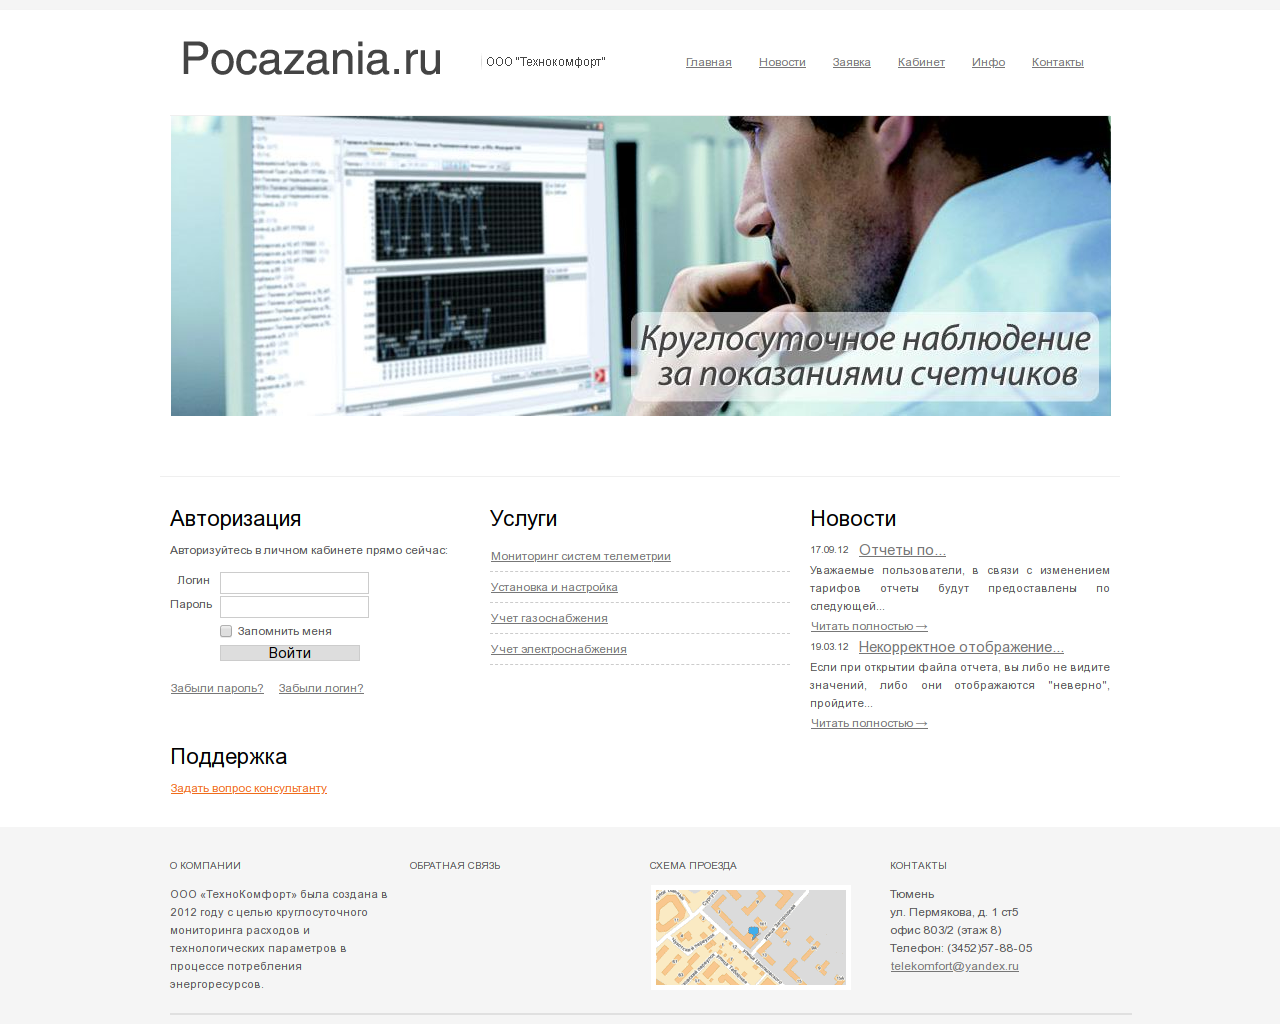 Изображение сайта pocazania.ru в разрешении 1280x1024